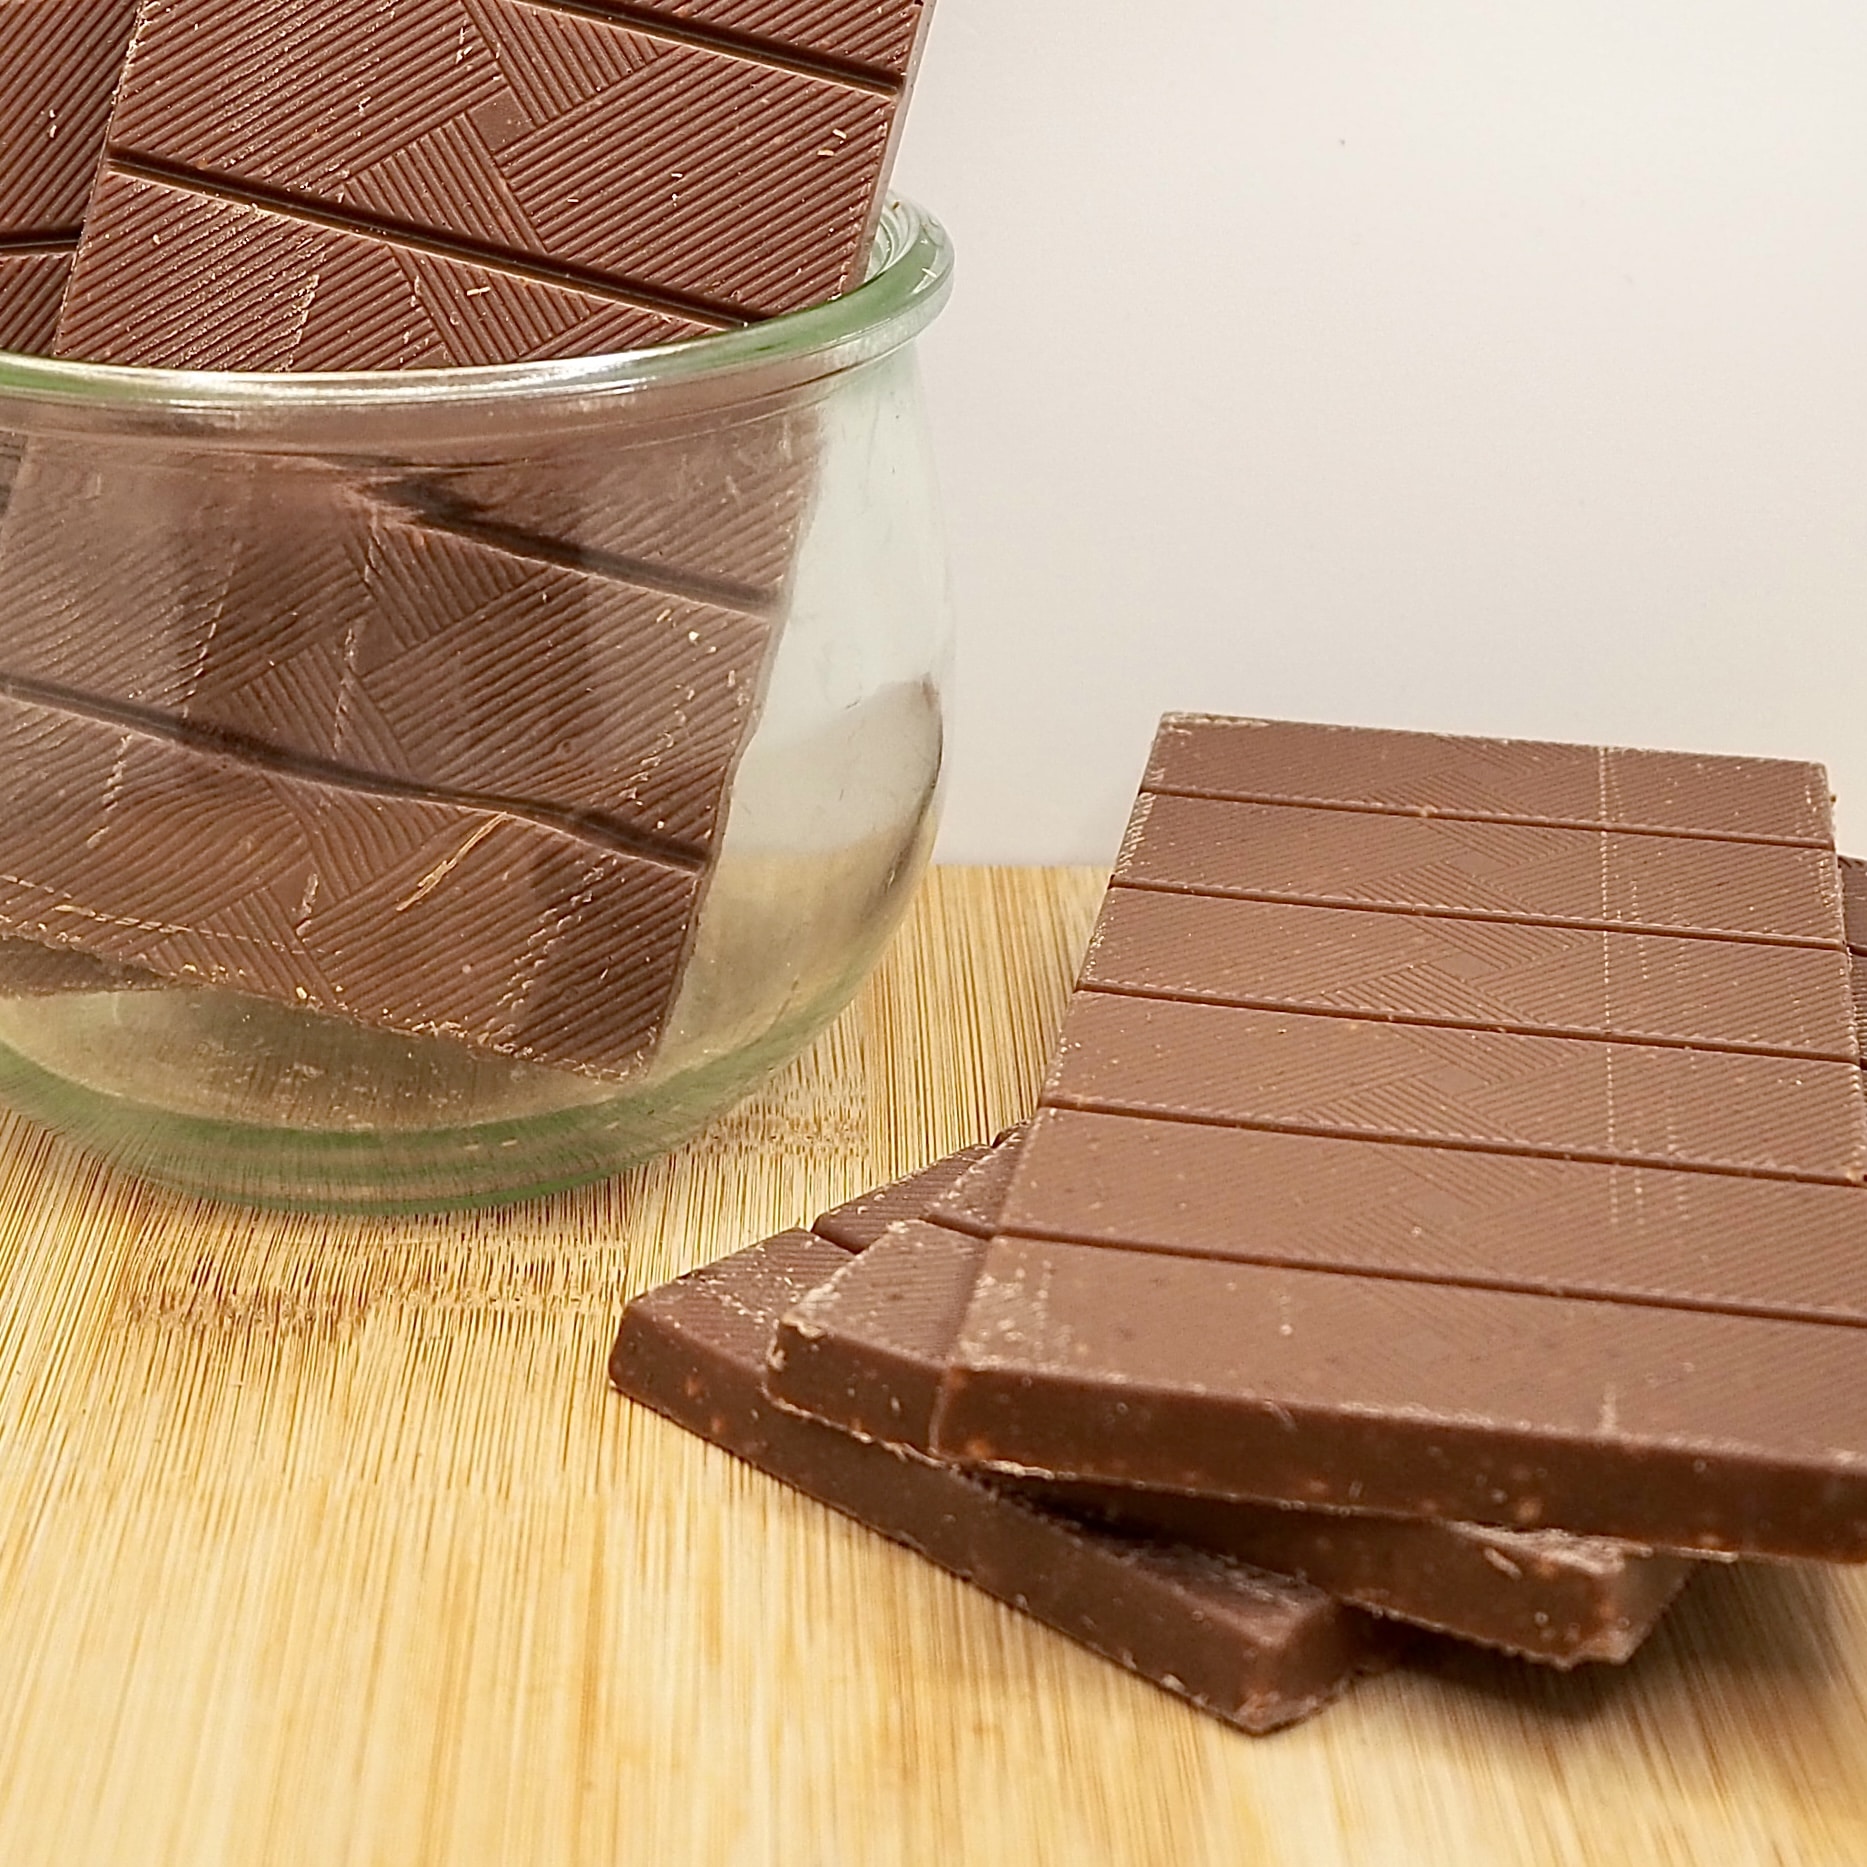 1 kg Chocolat noir à dessert 72% de cacao, fèves de chocolat